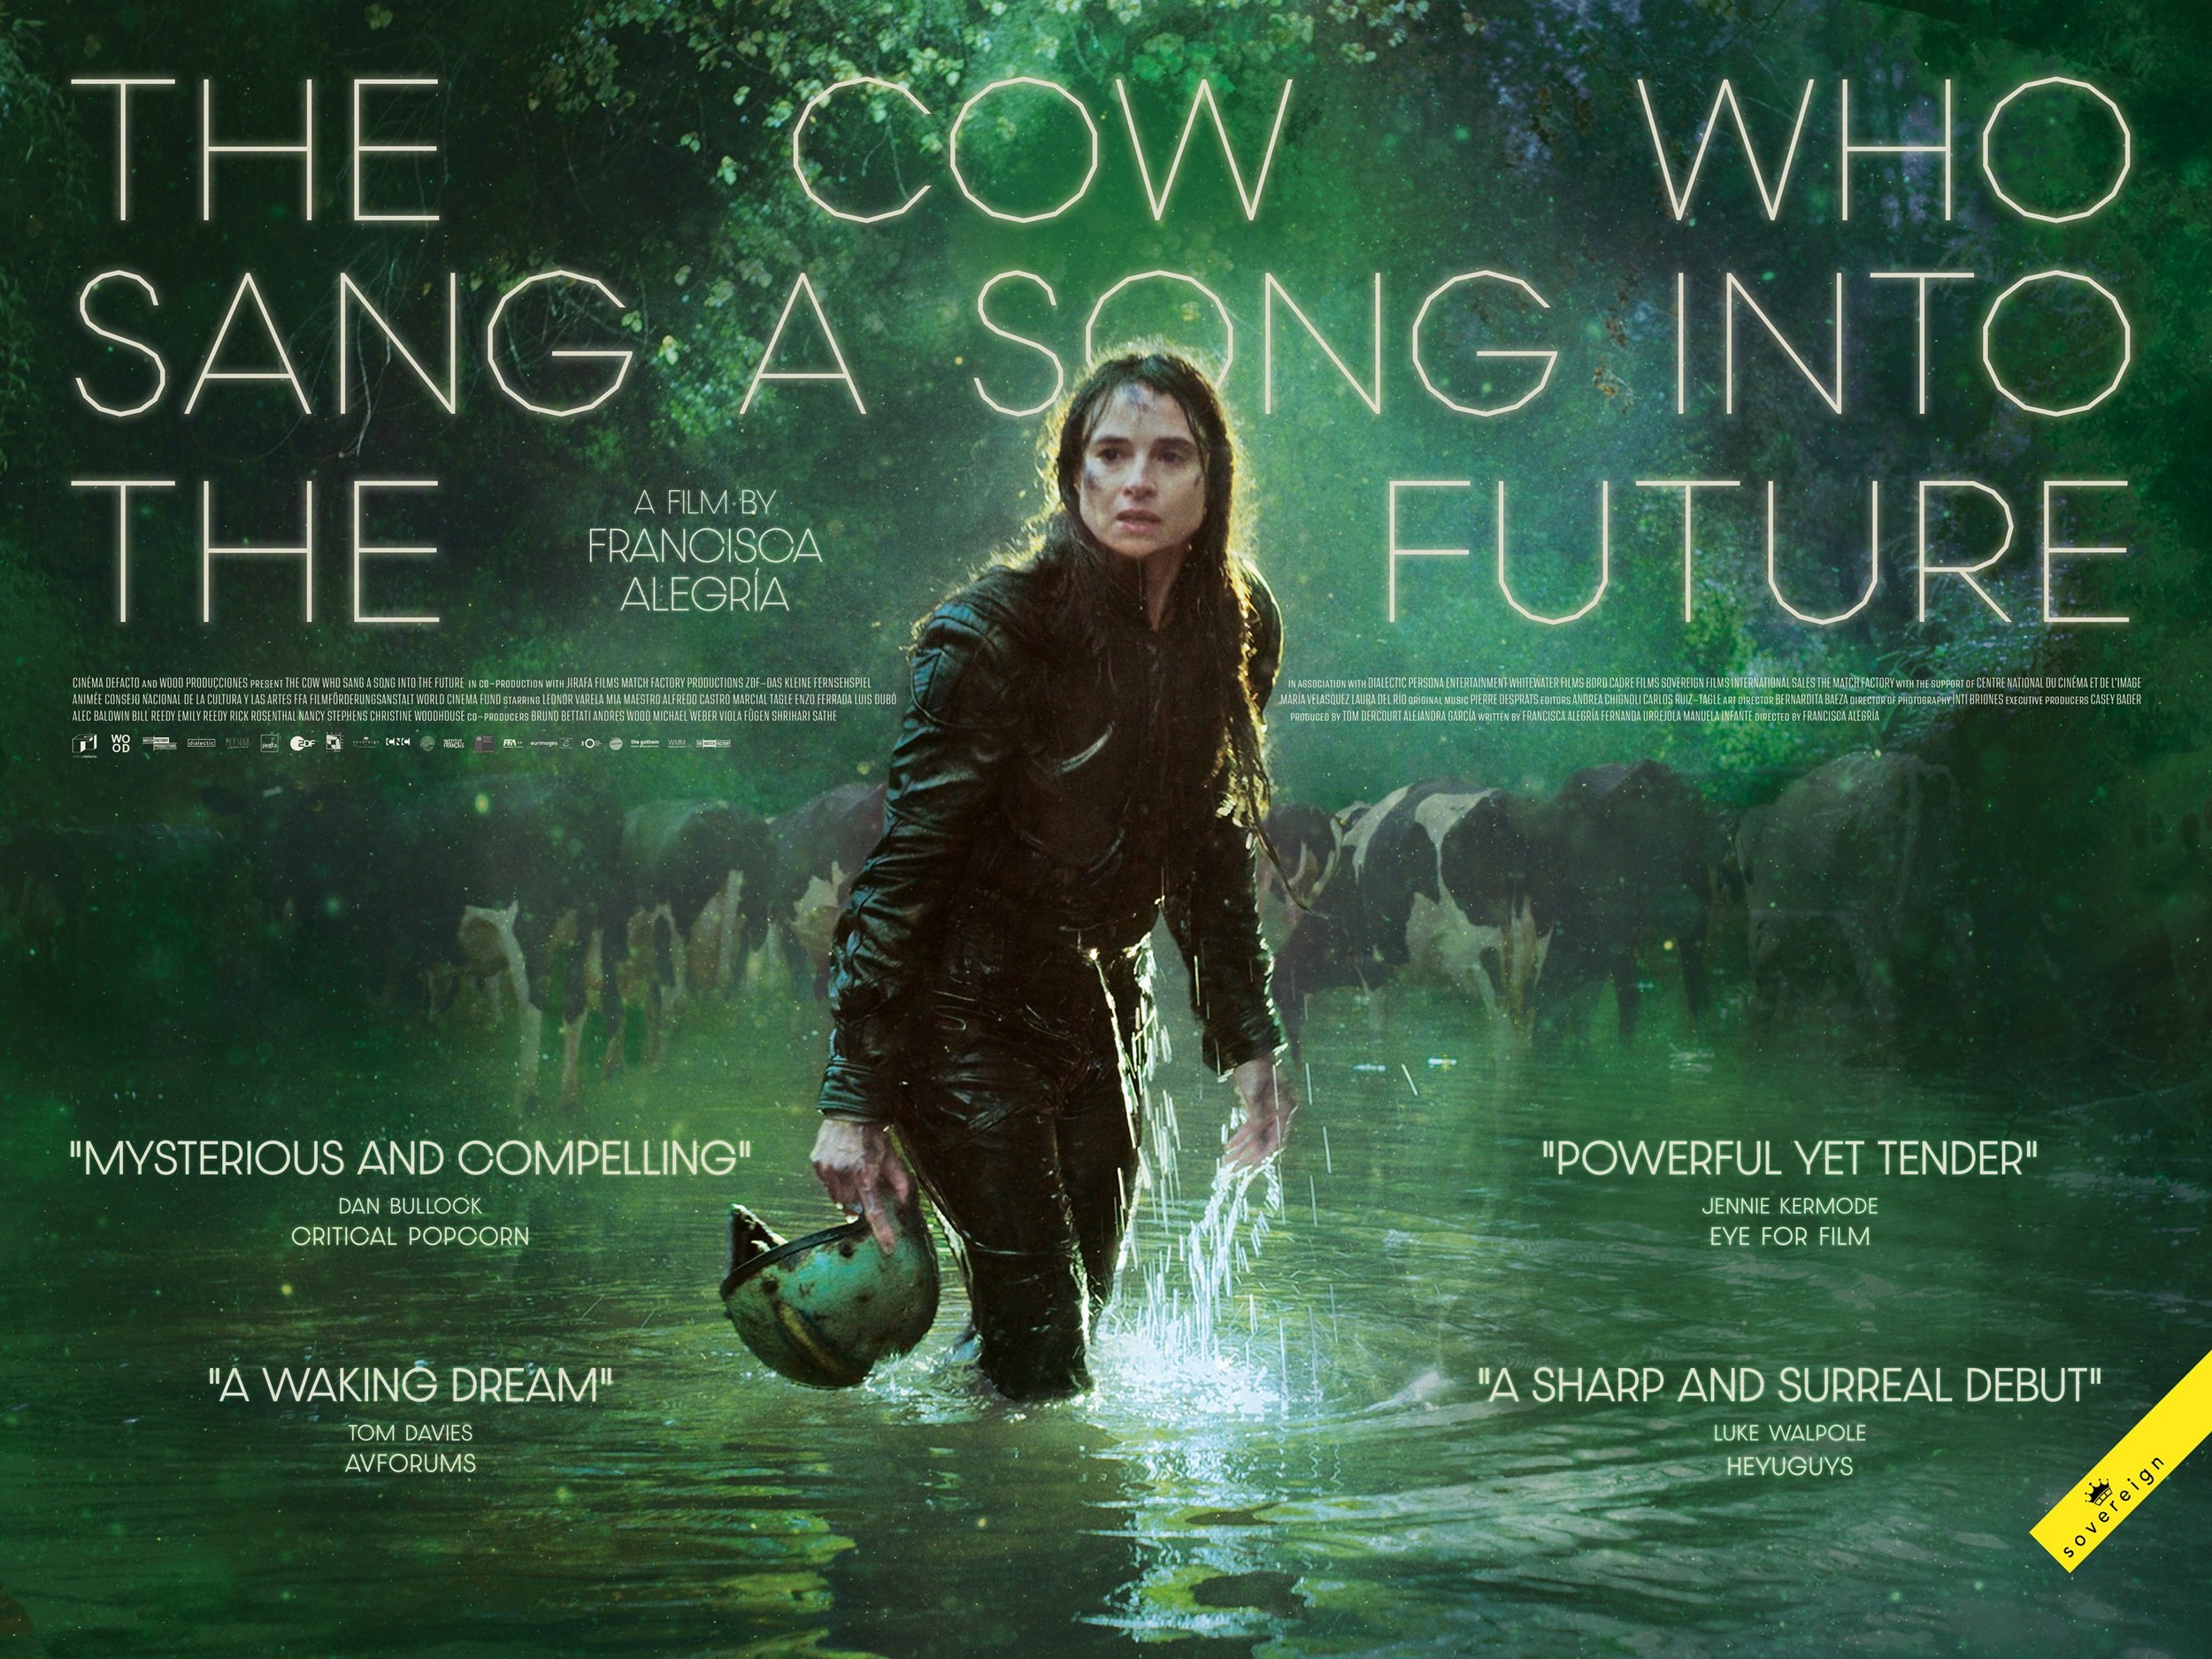 Mega Sized Movie Poster Image for La vaca que cantó una canción hacia el futuro (#1 of 2)